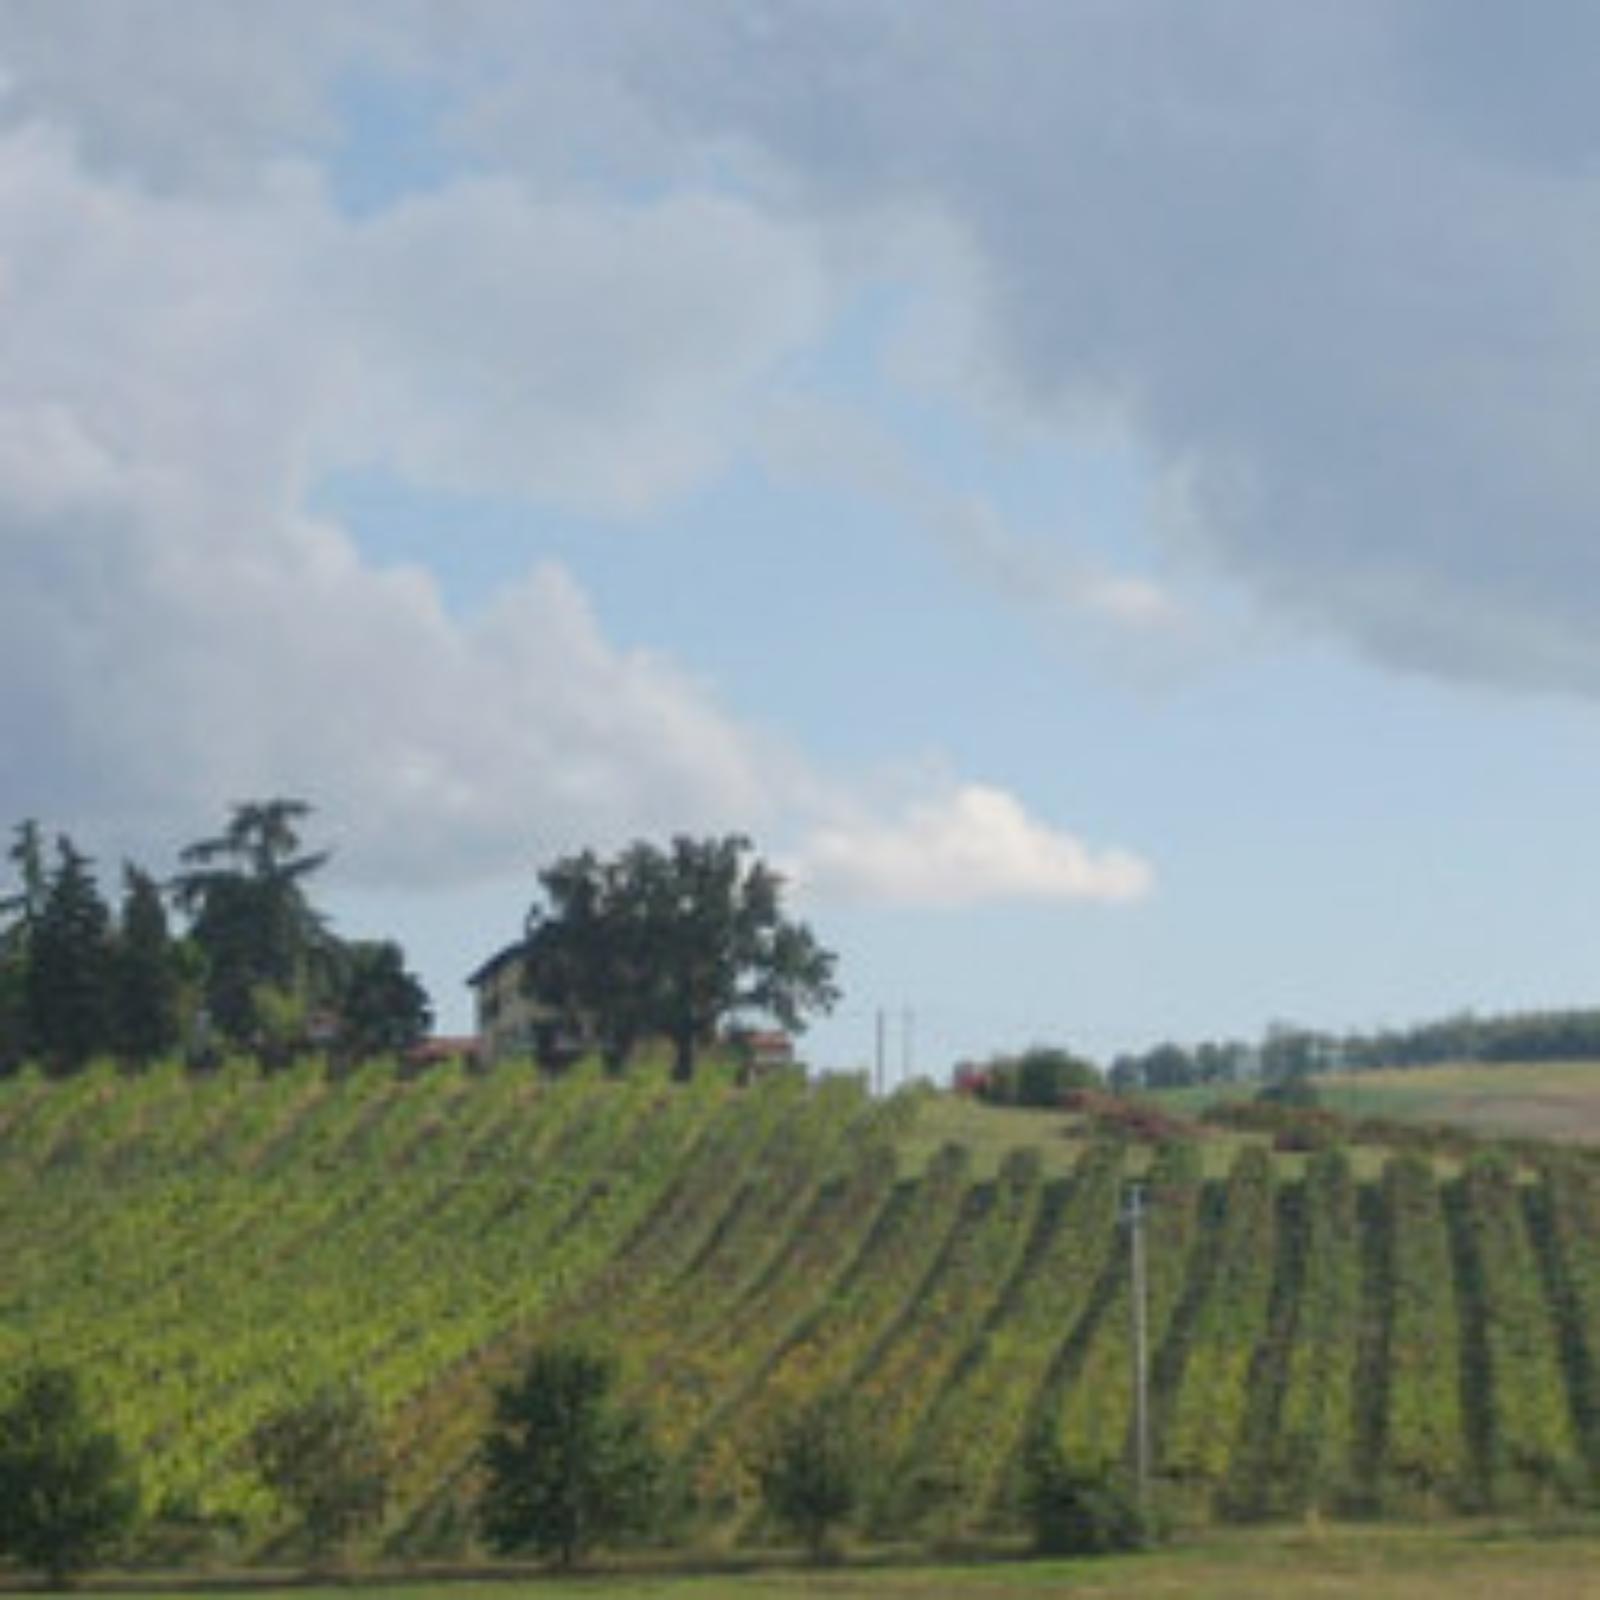 The Bella Vista wine farm